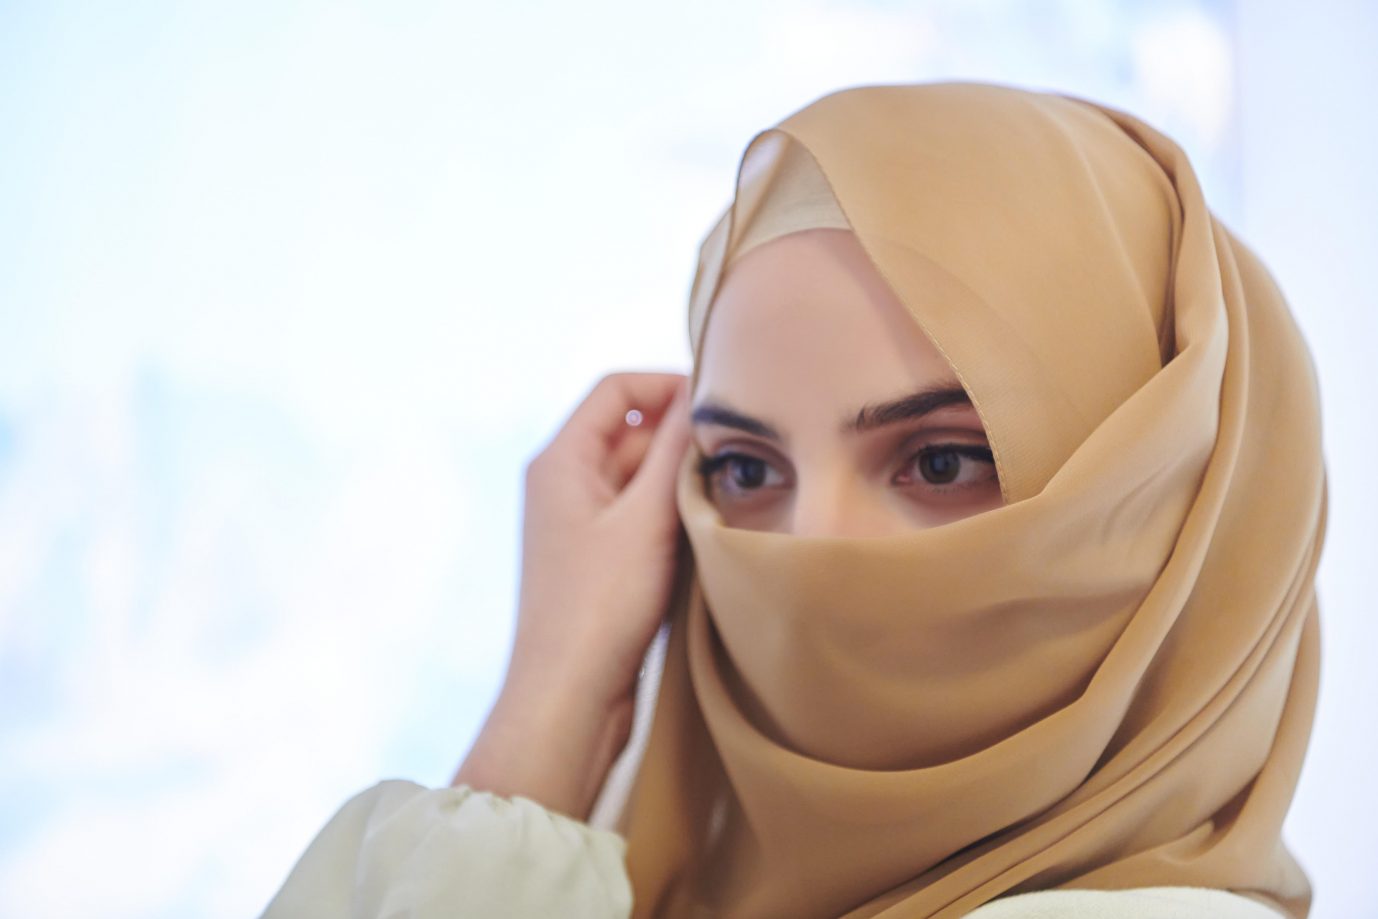 Verschleierte Frau: Das Unternehmen Jack Wolfskin präsentiert das islamische Kopftuch in einer Werbekampagne als Zeichen der Vielfalt